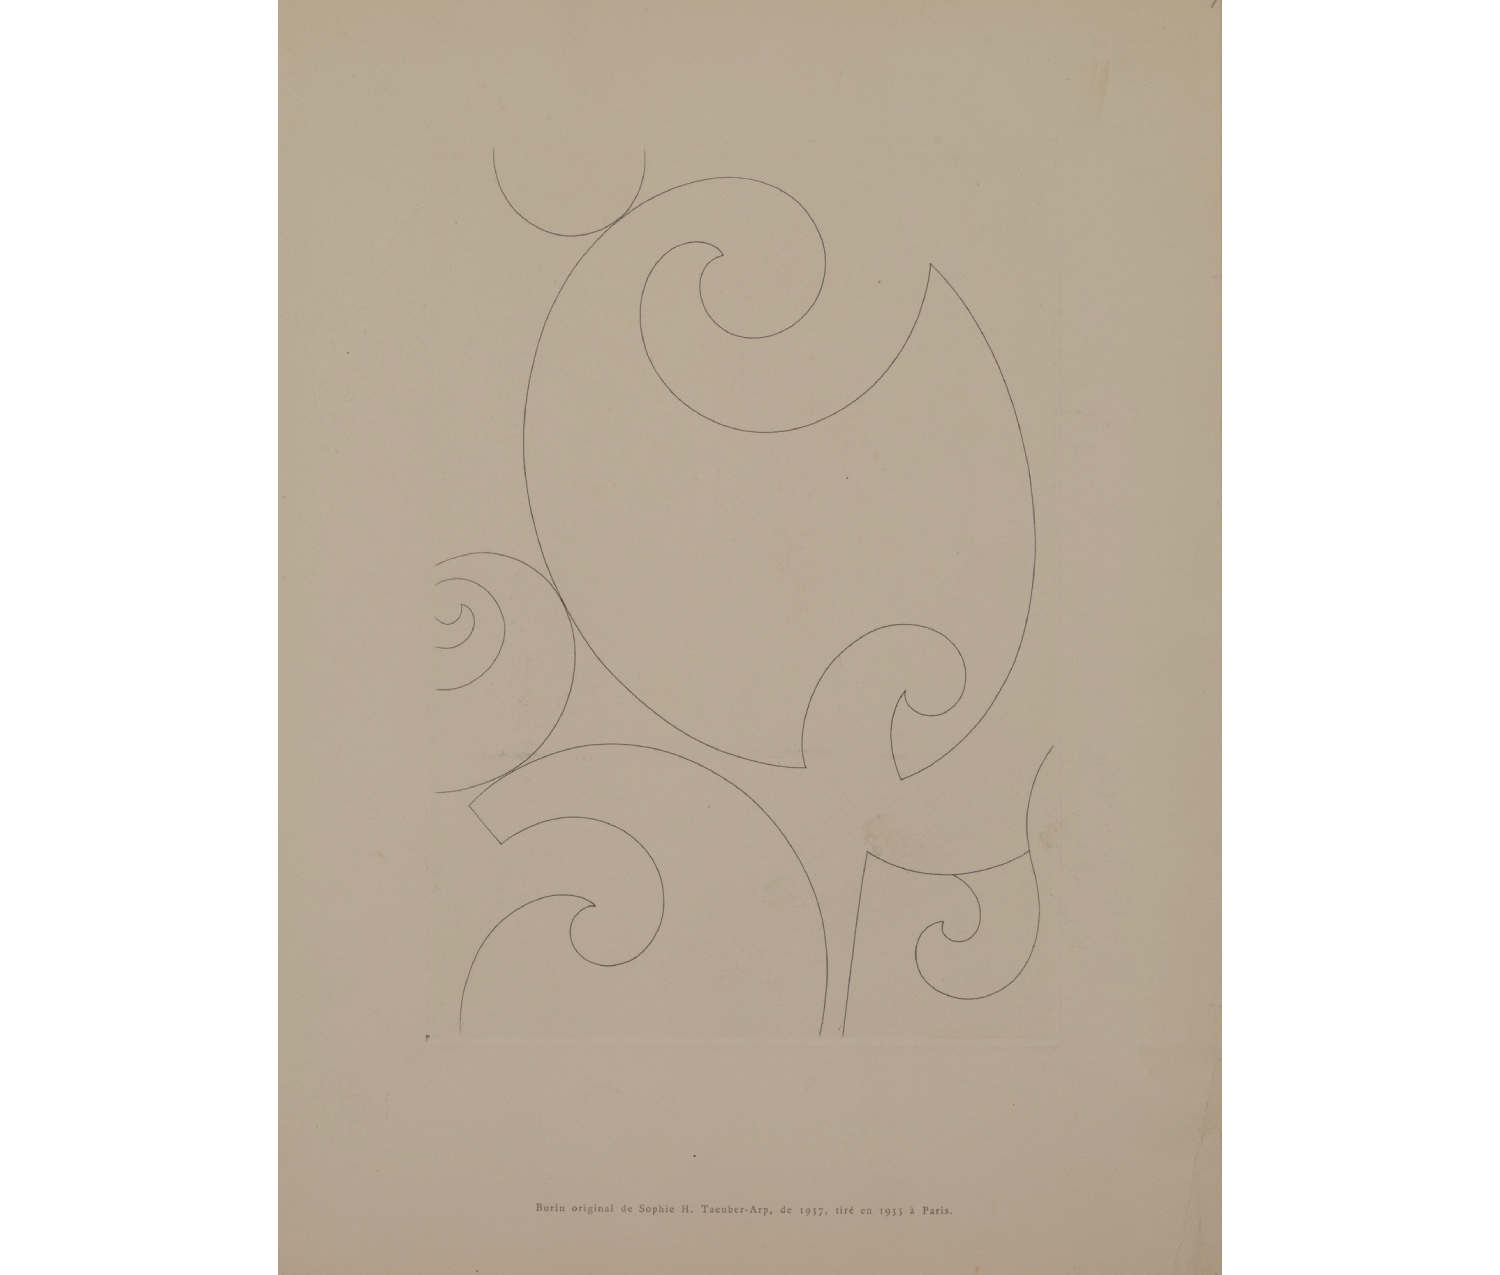 curved linear figures; printed below: "Burin original de Sophie H. Taeuber-Arp, de 1937, tiré en 1955 à Paris."